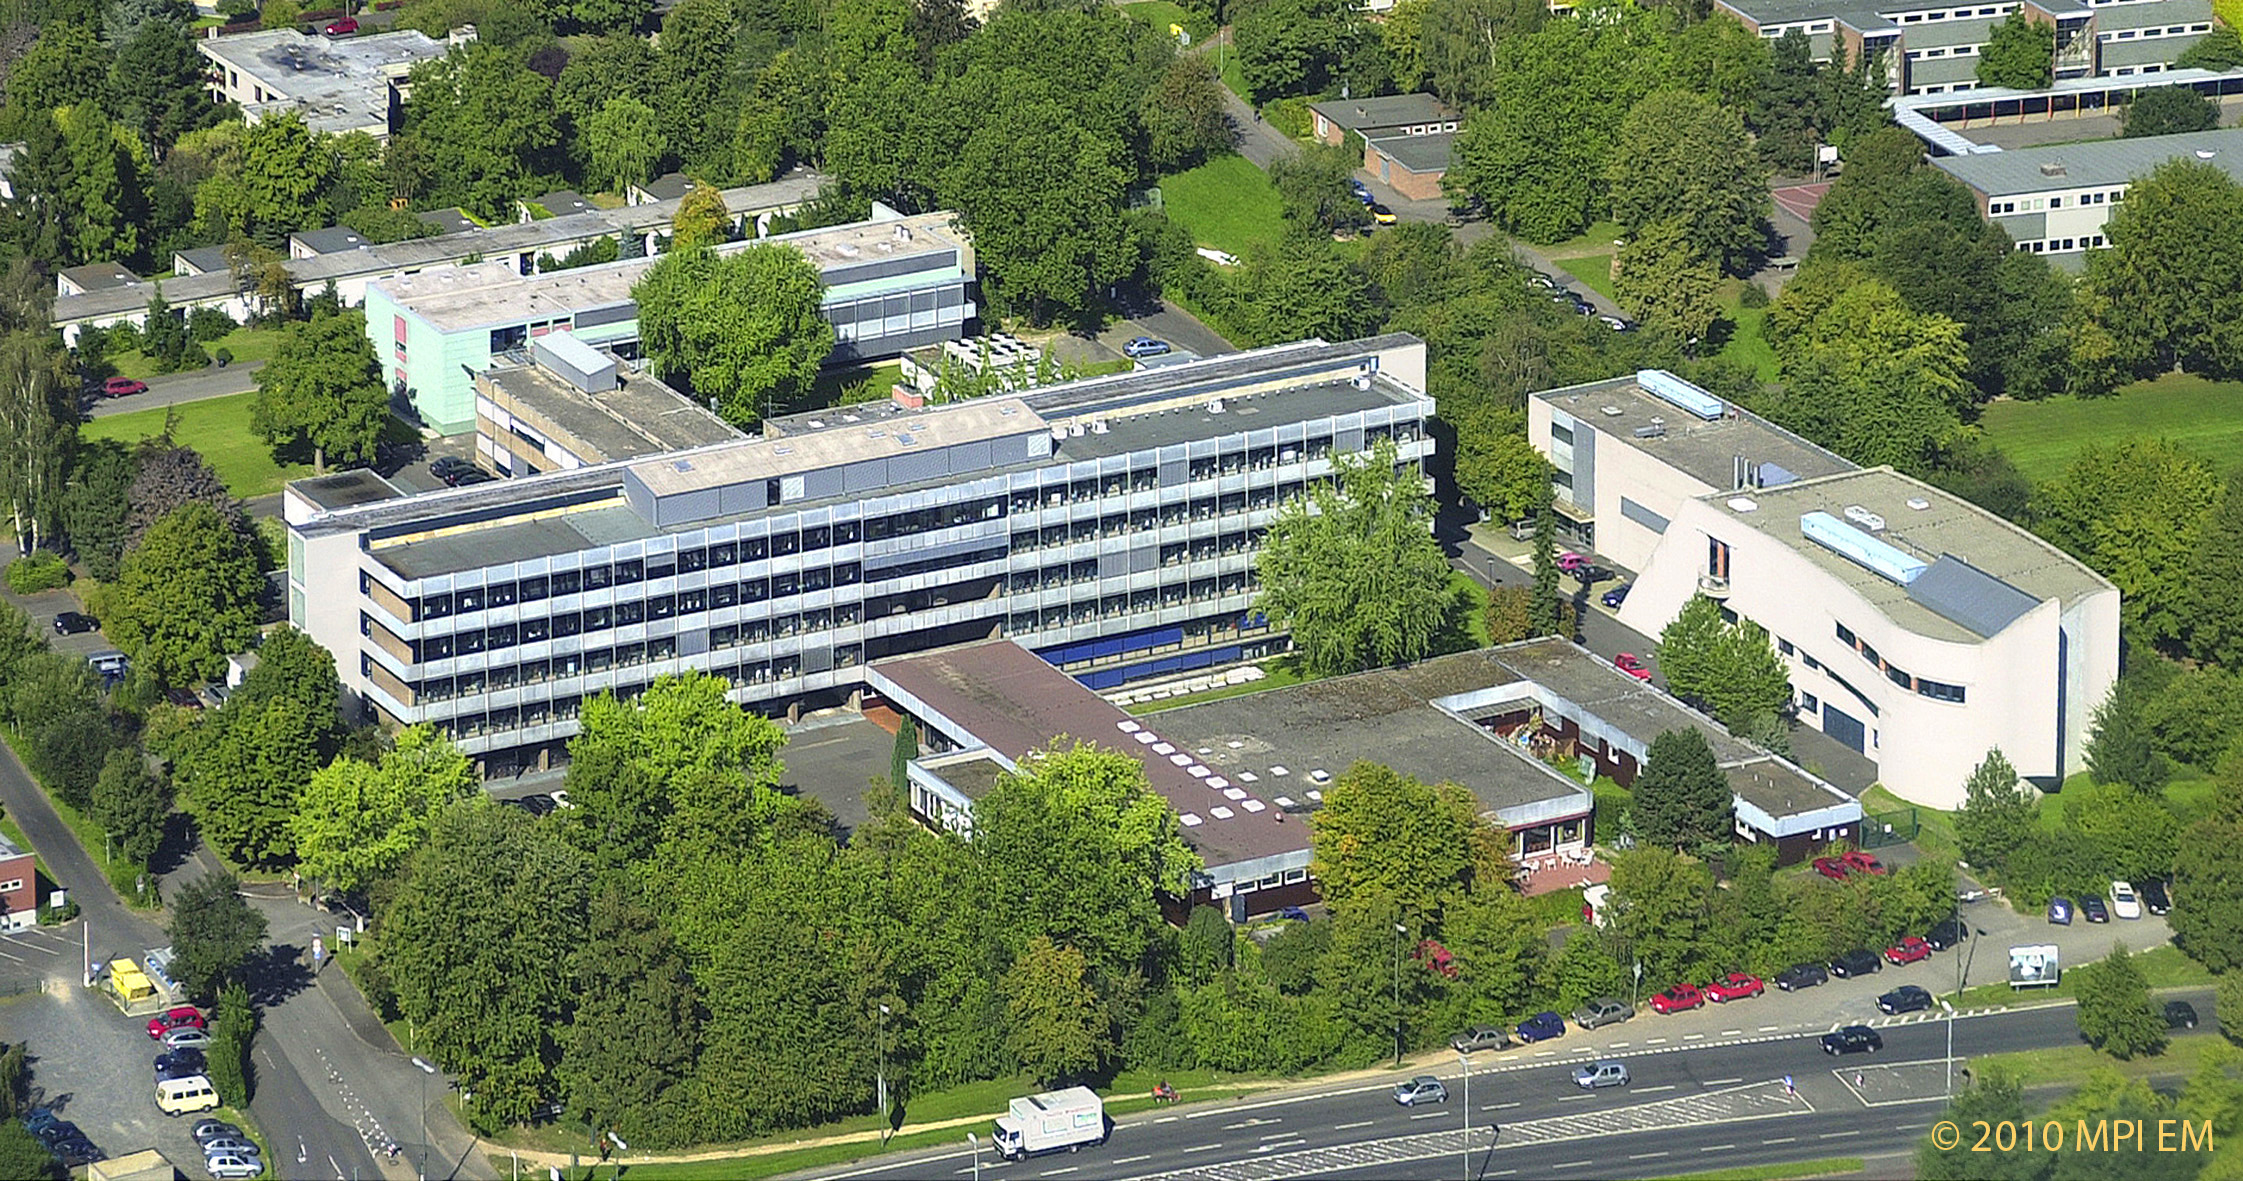 Max-Planck-Institut für Experimentelle Medizin